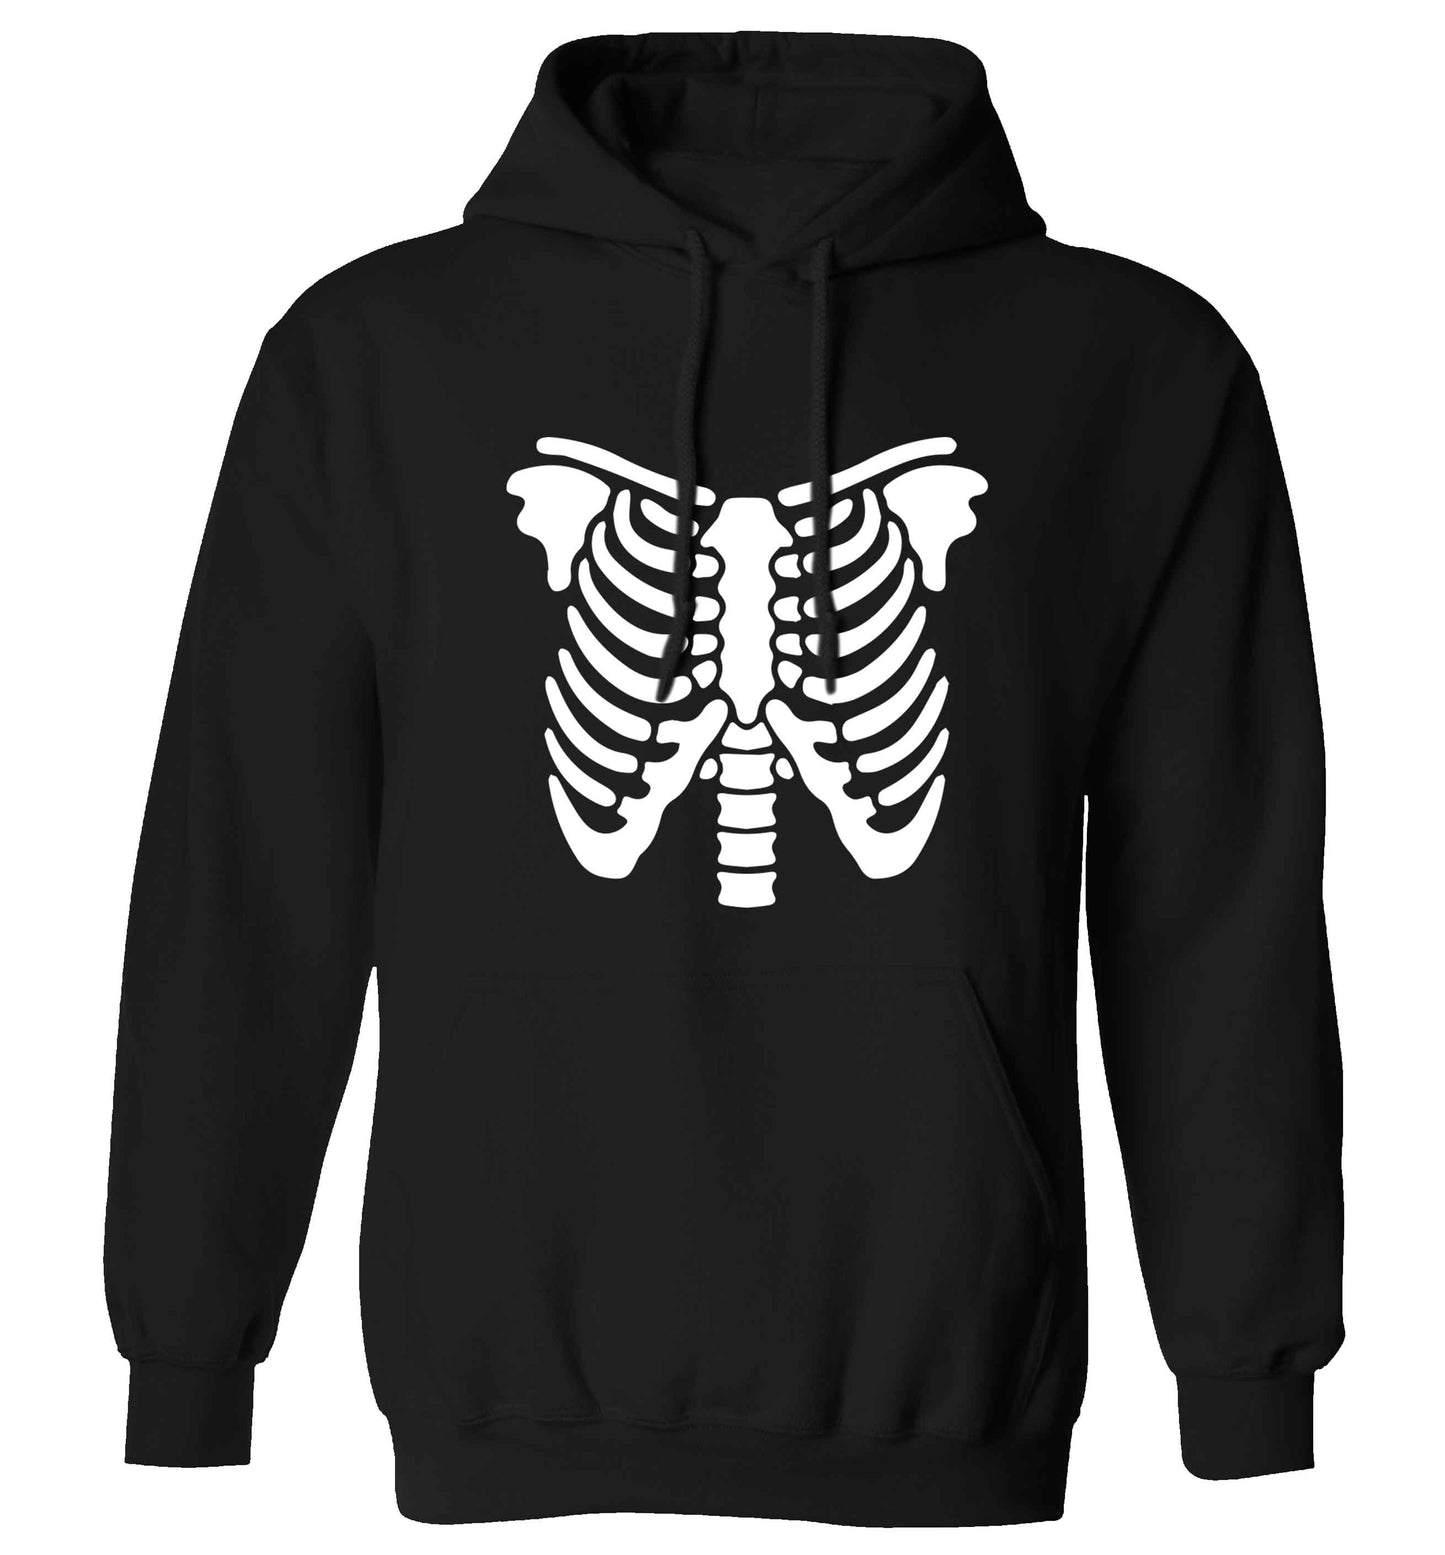 Skeleton ribcage adults unisex black hoodie 2XL